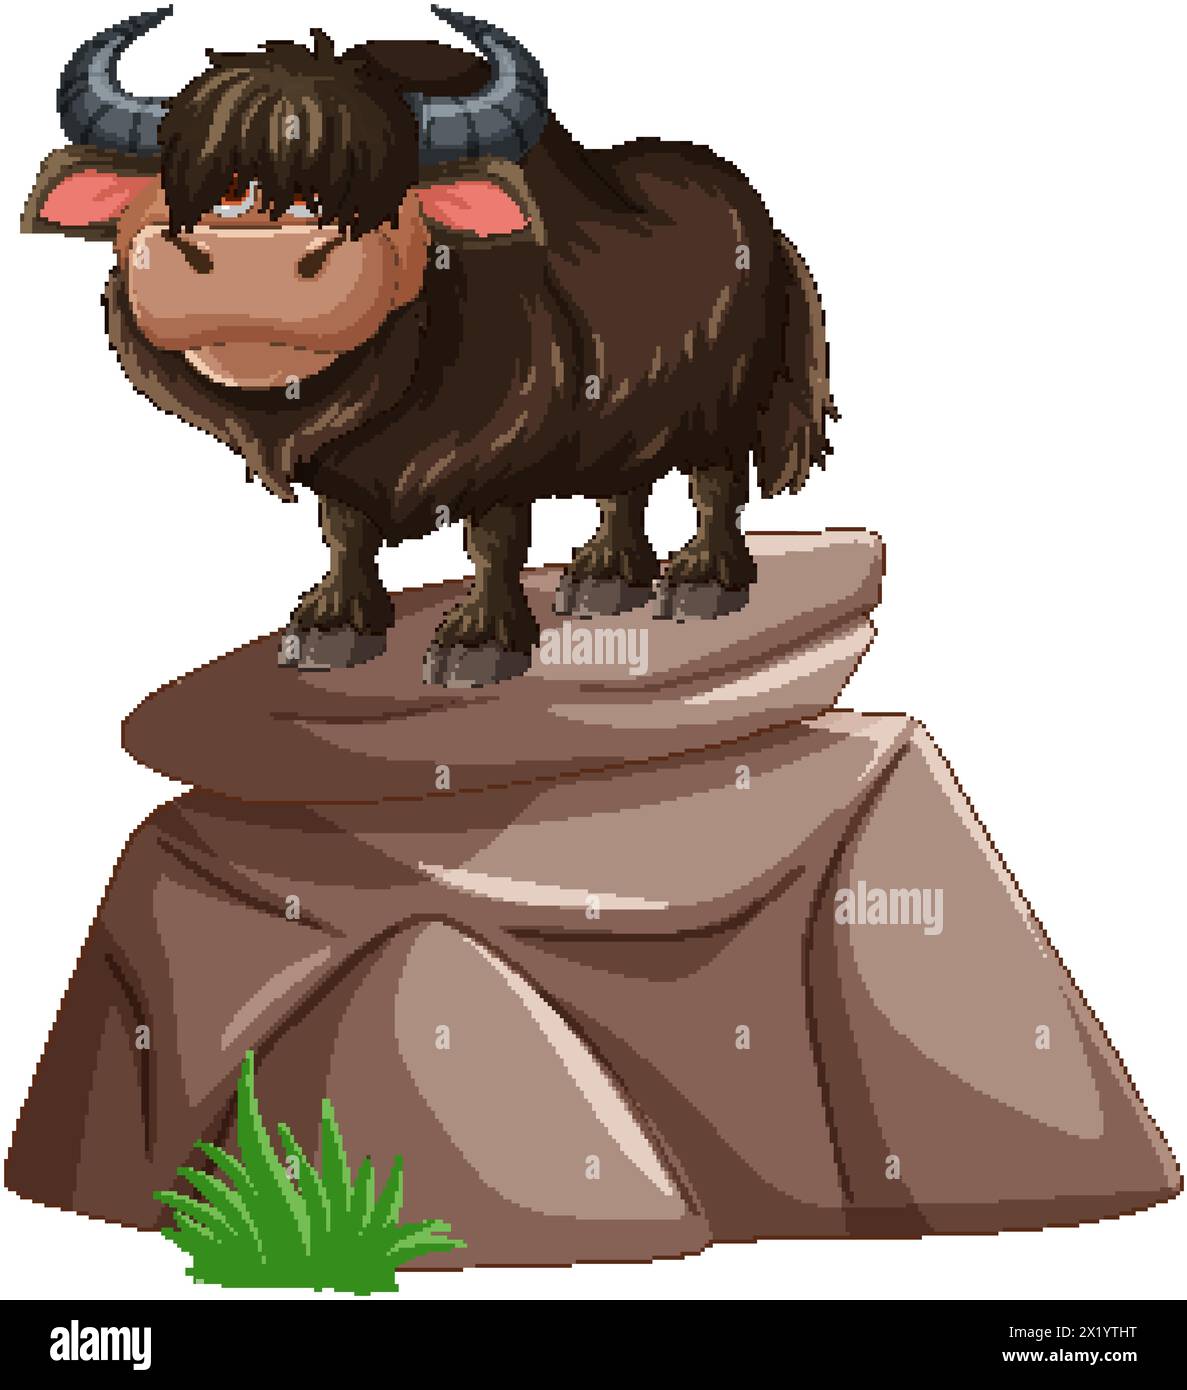 Cartoon yak standing atop a rocky outcrop Stock Vector